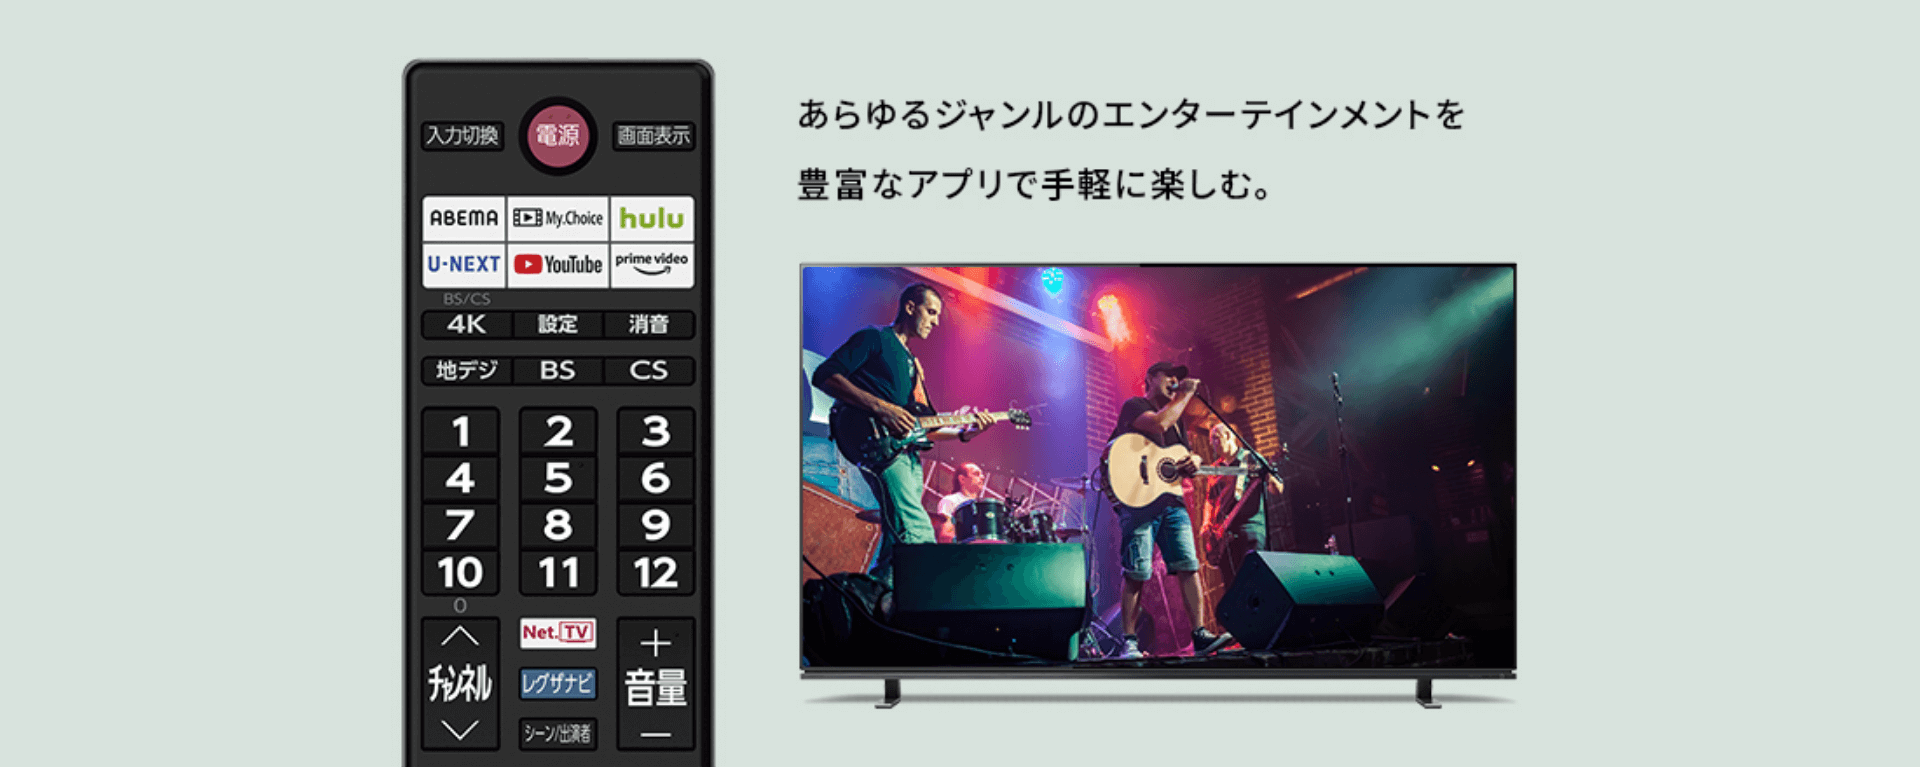 東芝 75M550K REGZAM550Kシリーズ [4K内蔵 液晶テレビ] - テレビ